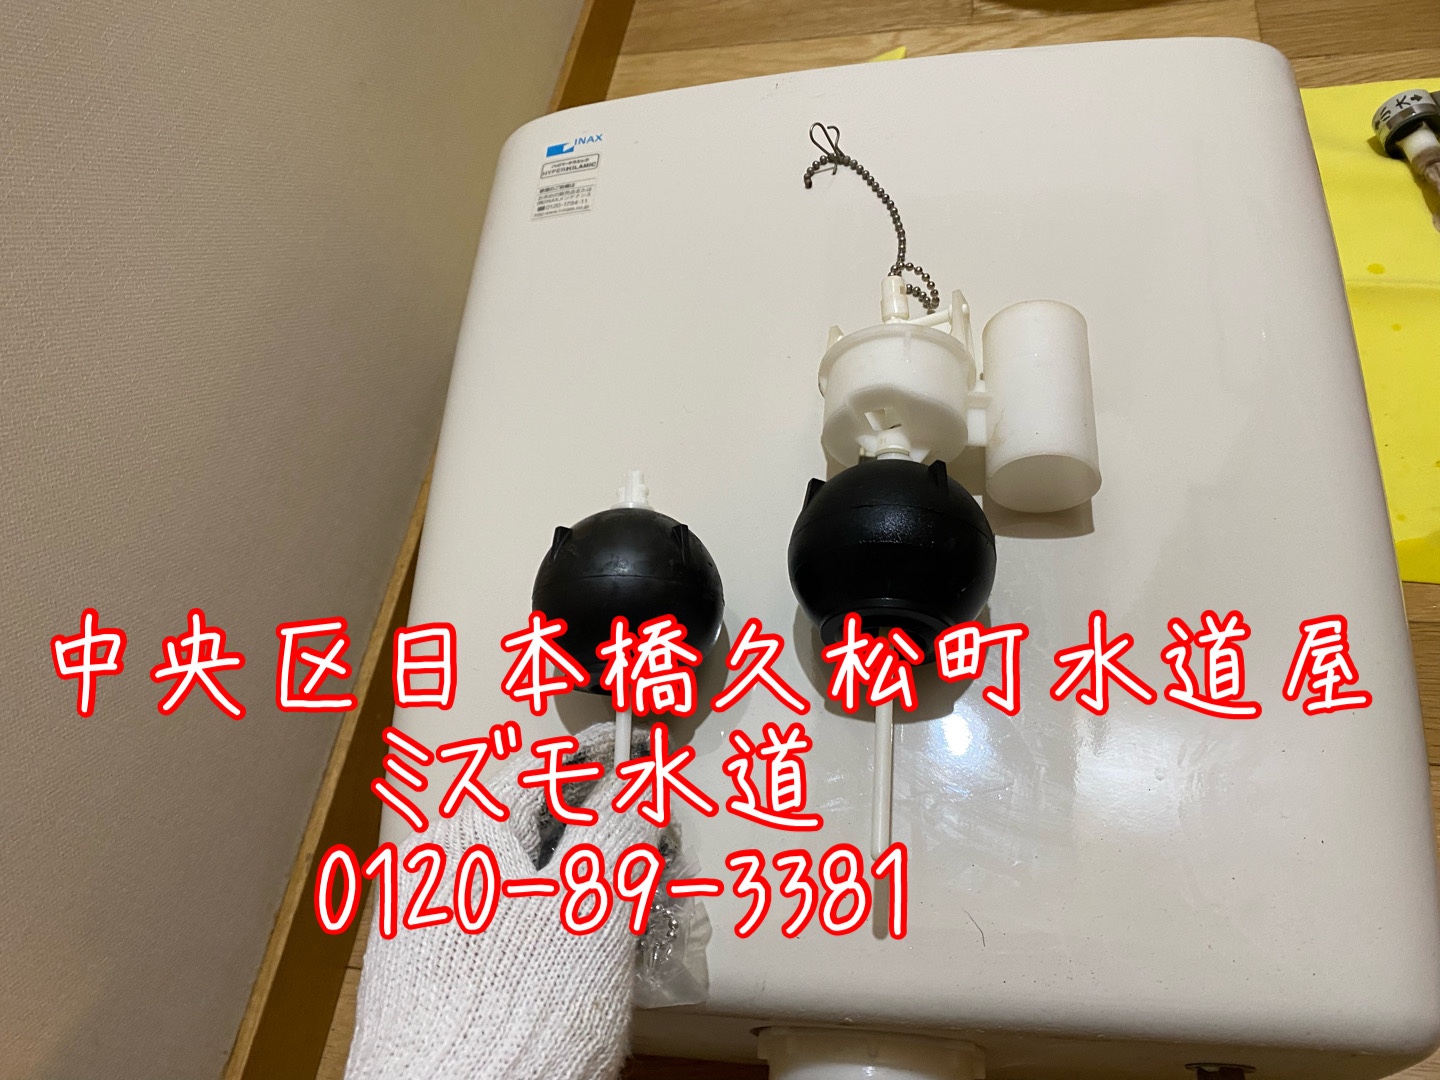 中央区日本橋トイレタンク水漏れ修理